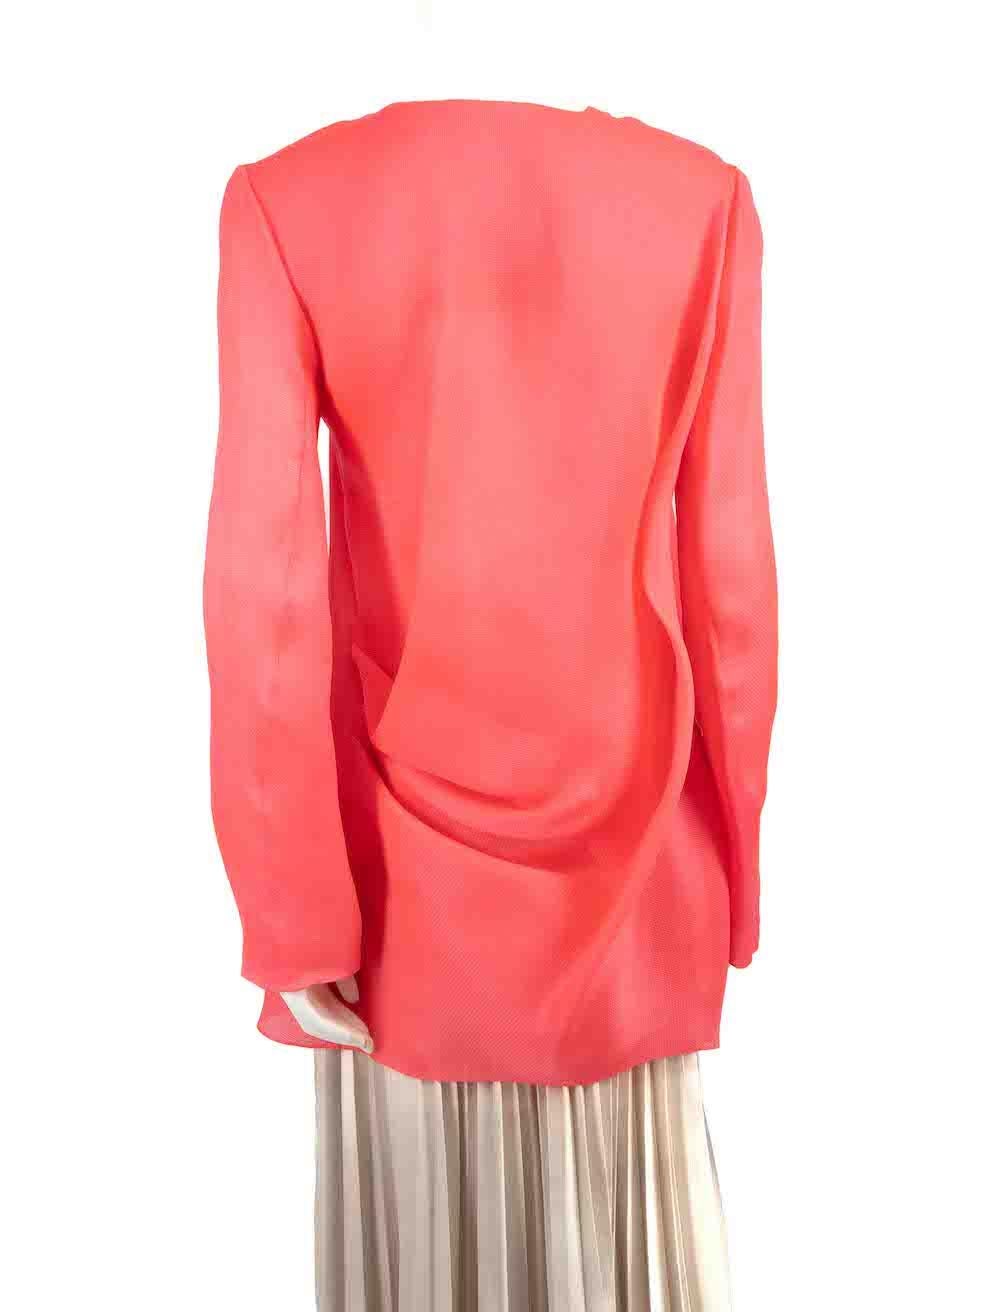 Roksanda Roksanda Ilincic Neon Pink Silk Fine Blazer Size L In Good Condition For Sale In London, GB